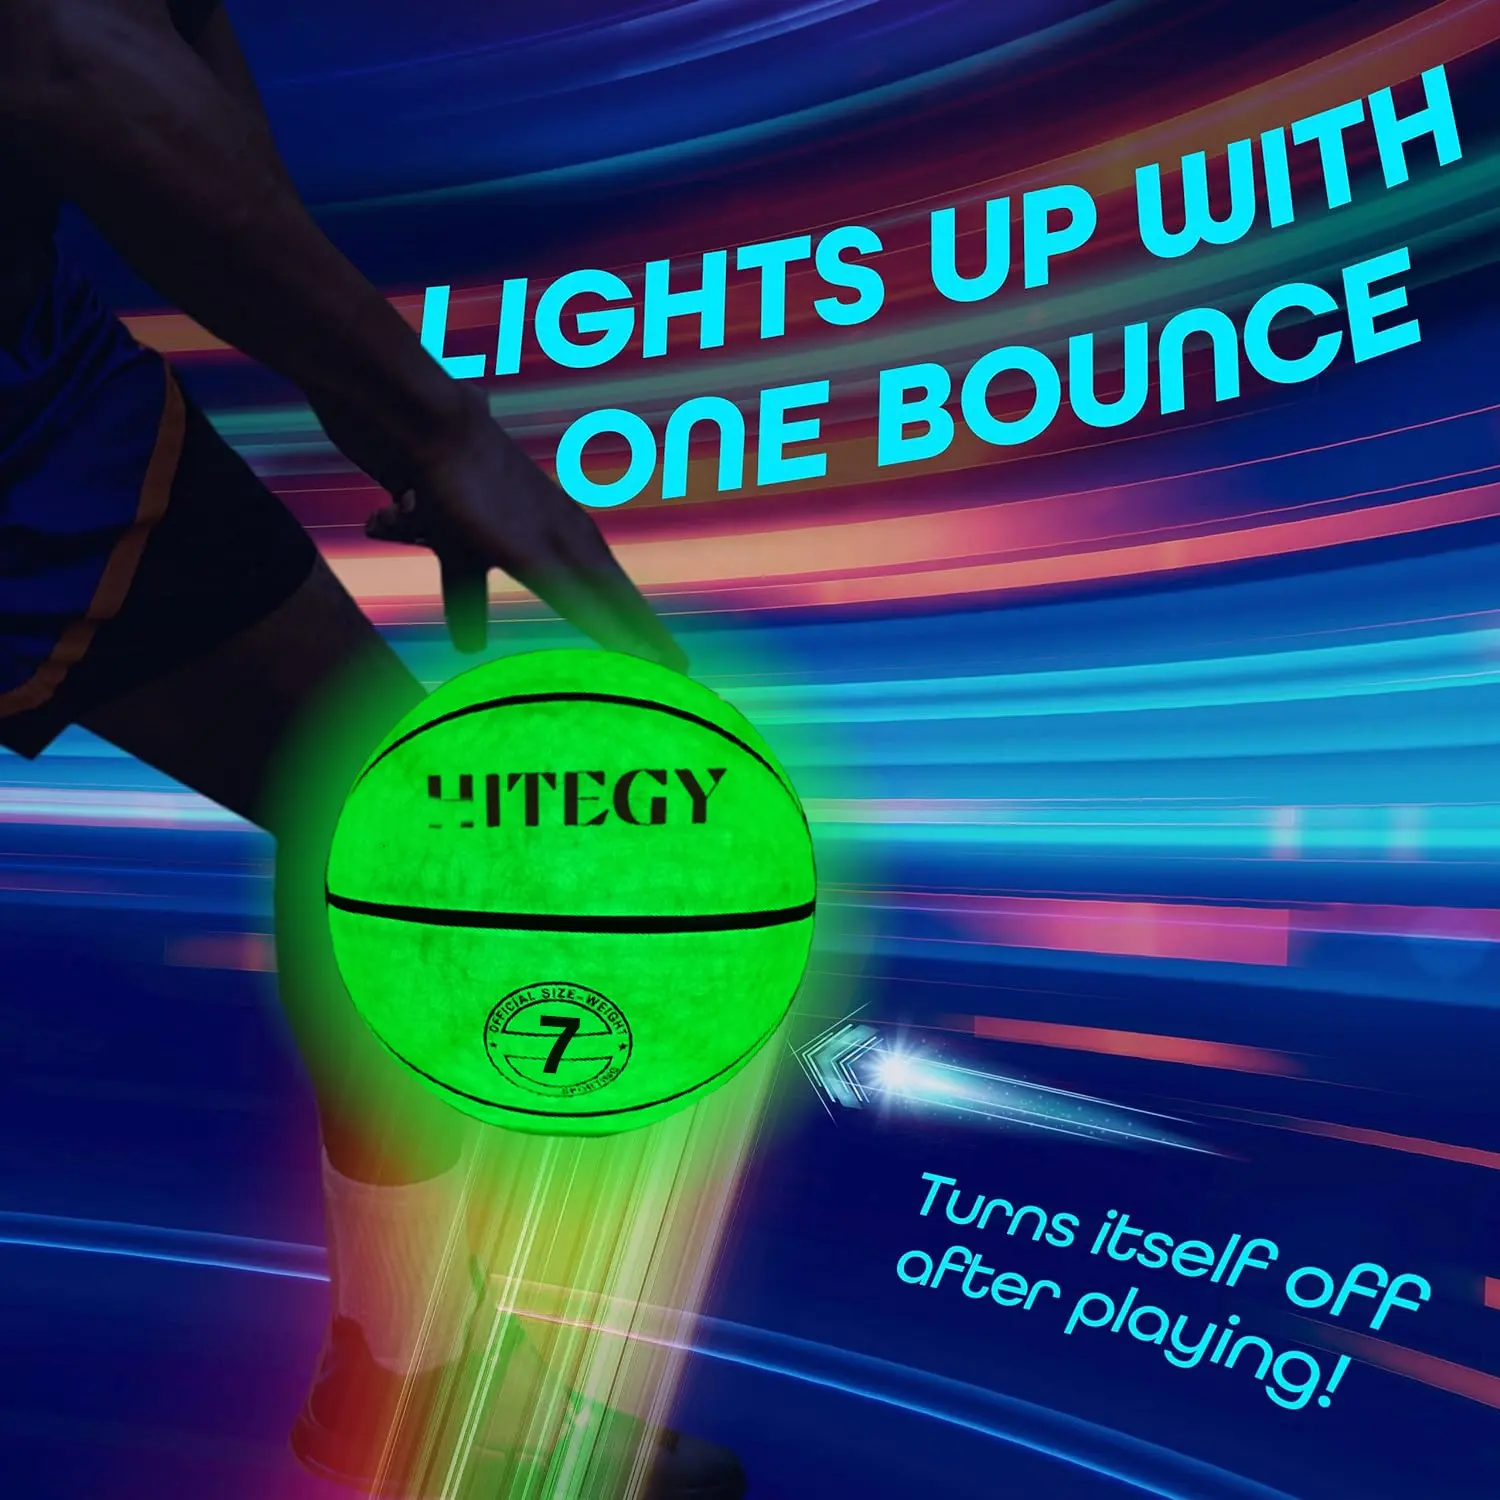 Jeux de basket-ball LED lumineux pour garçons adolescents, vert phosphorescent, pour basket-ball de nuit